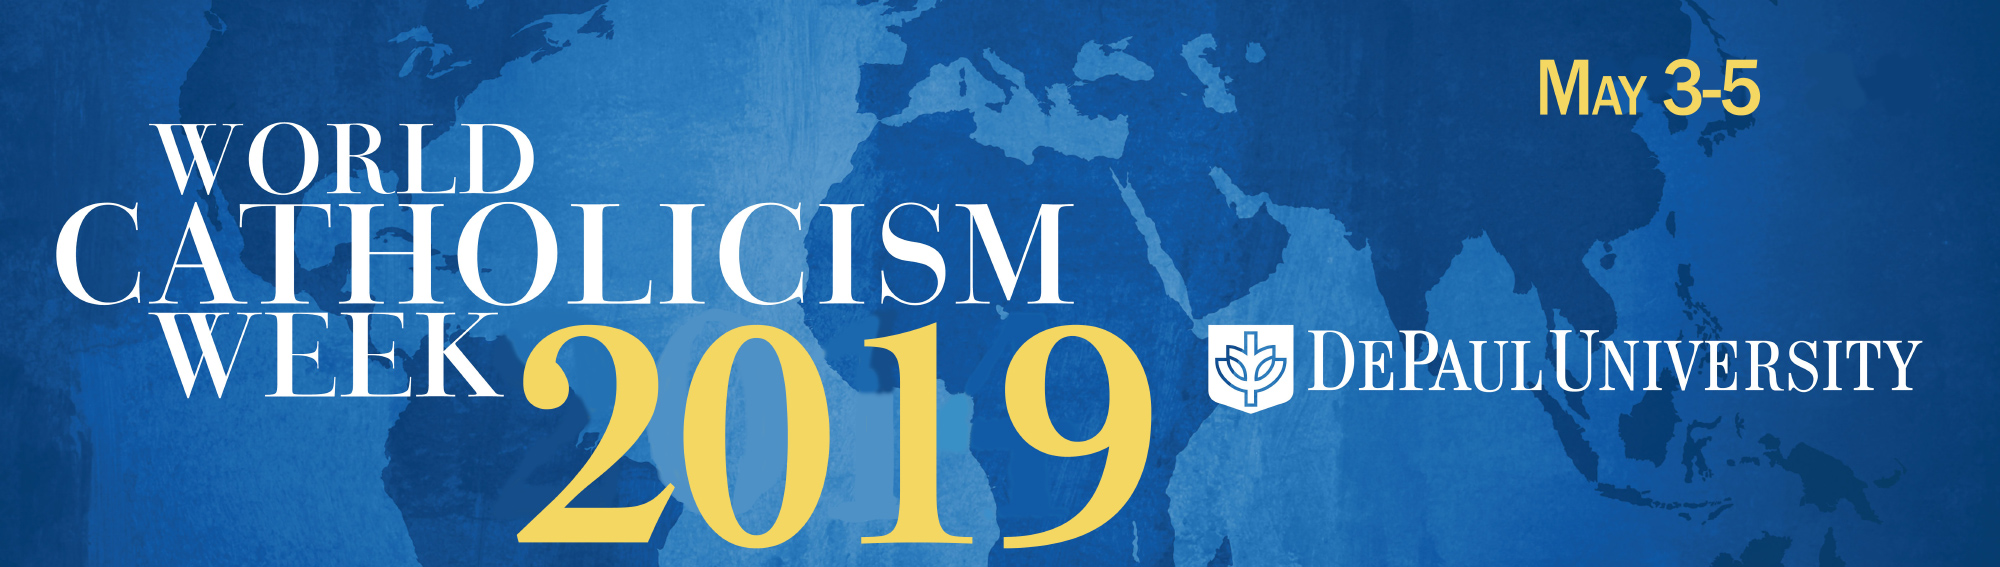 Logo for World Catholicism Week 2019